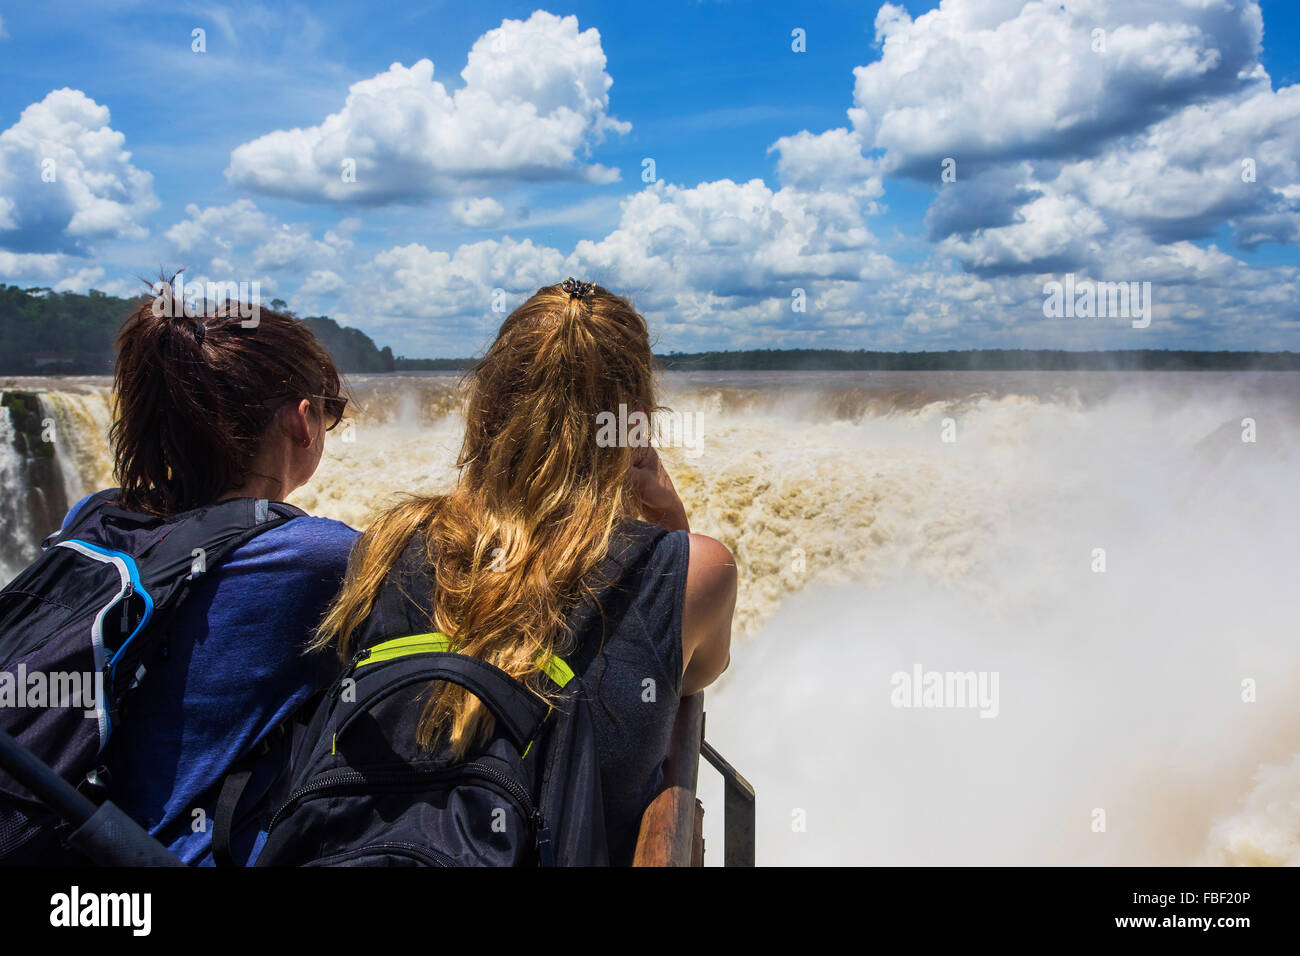 Touristen auf der Suche im Blick auf Teufelskehle, der größte Wasserfall in Iguazu Wasserfälle an der Grenze zwischen Argentinien und Brasilien. Stockfoto